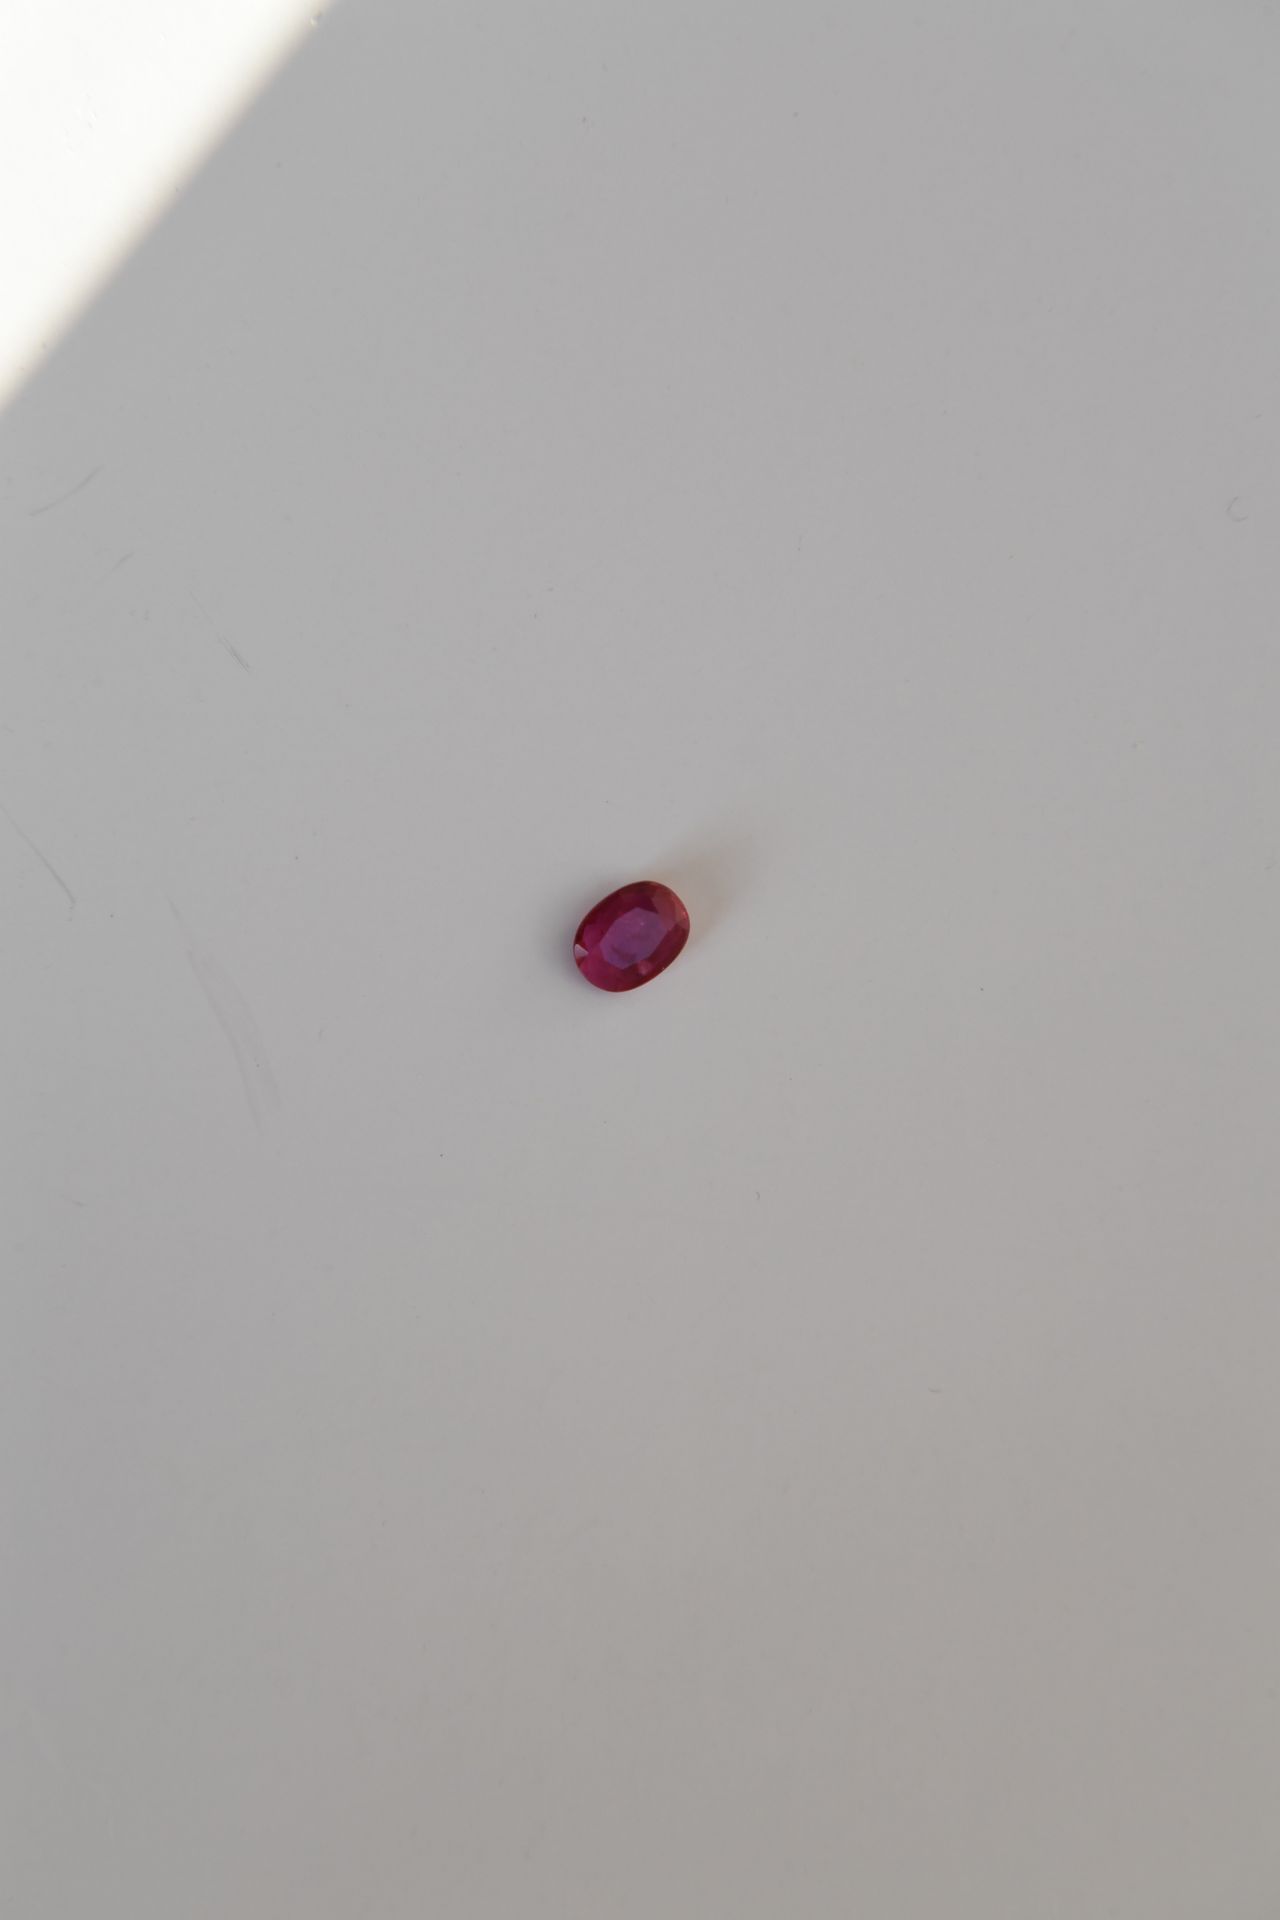 Null Rubino taglio ovale del peso di circa 0,9 carati.